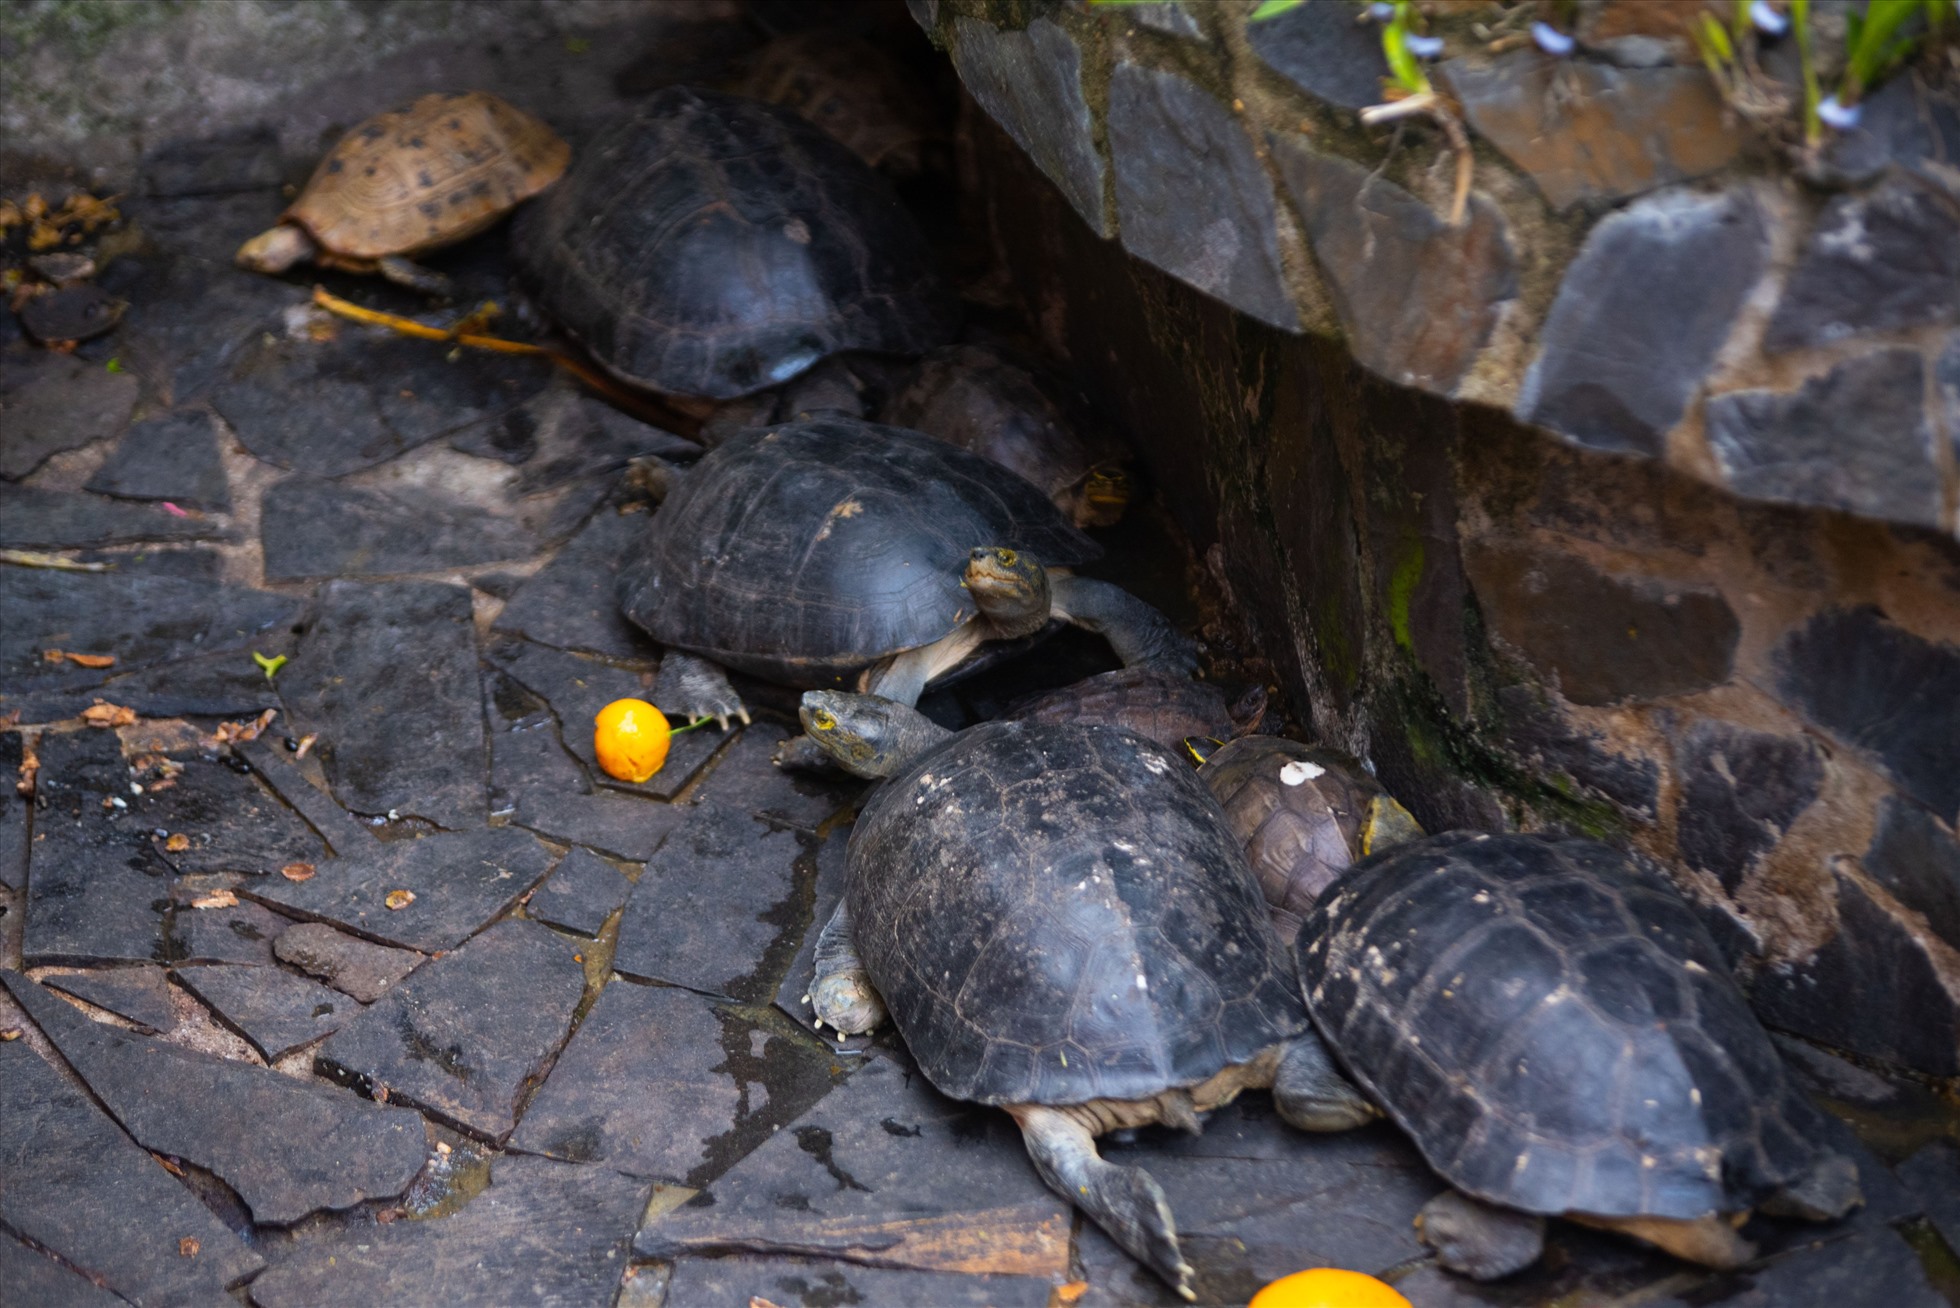 Theo lực lượng kiểm lâm, 62 con rùa gồm 8 loài: hộp lưng đen, đất sê pôn, ba gờ, rùa đất lớn đều thuộc danh mục quý, hiếm. Trong đó, có 11 con rùa núi vàng là loài cực kỳ nguy cấp.